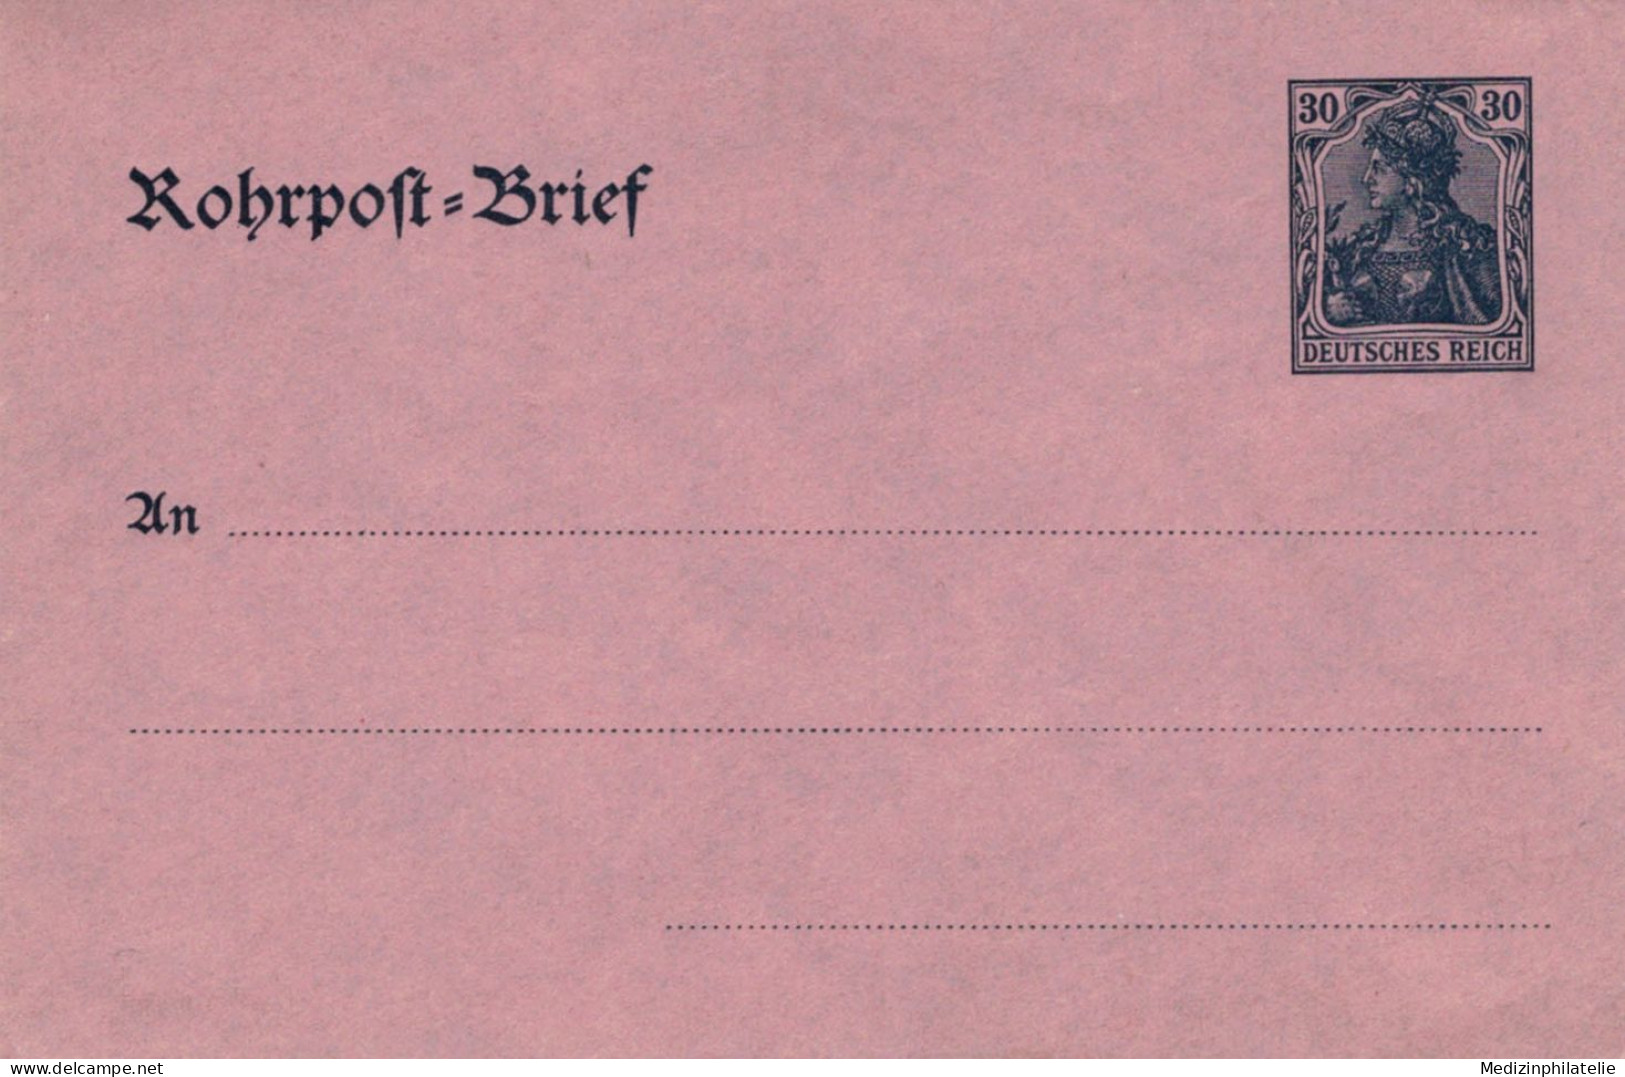 Rohrpost-Brief 30 Pf. Germania Glattes Papier - Ungebraucht - Buste